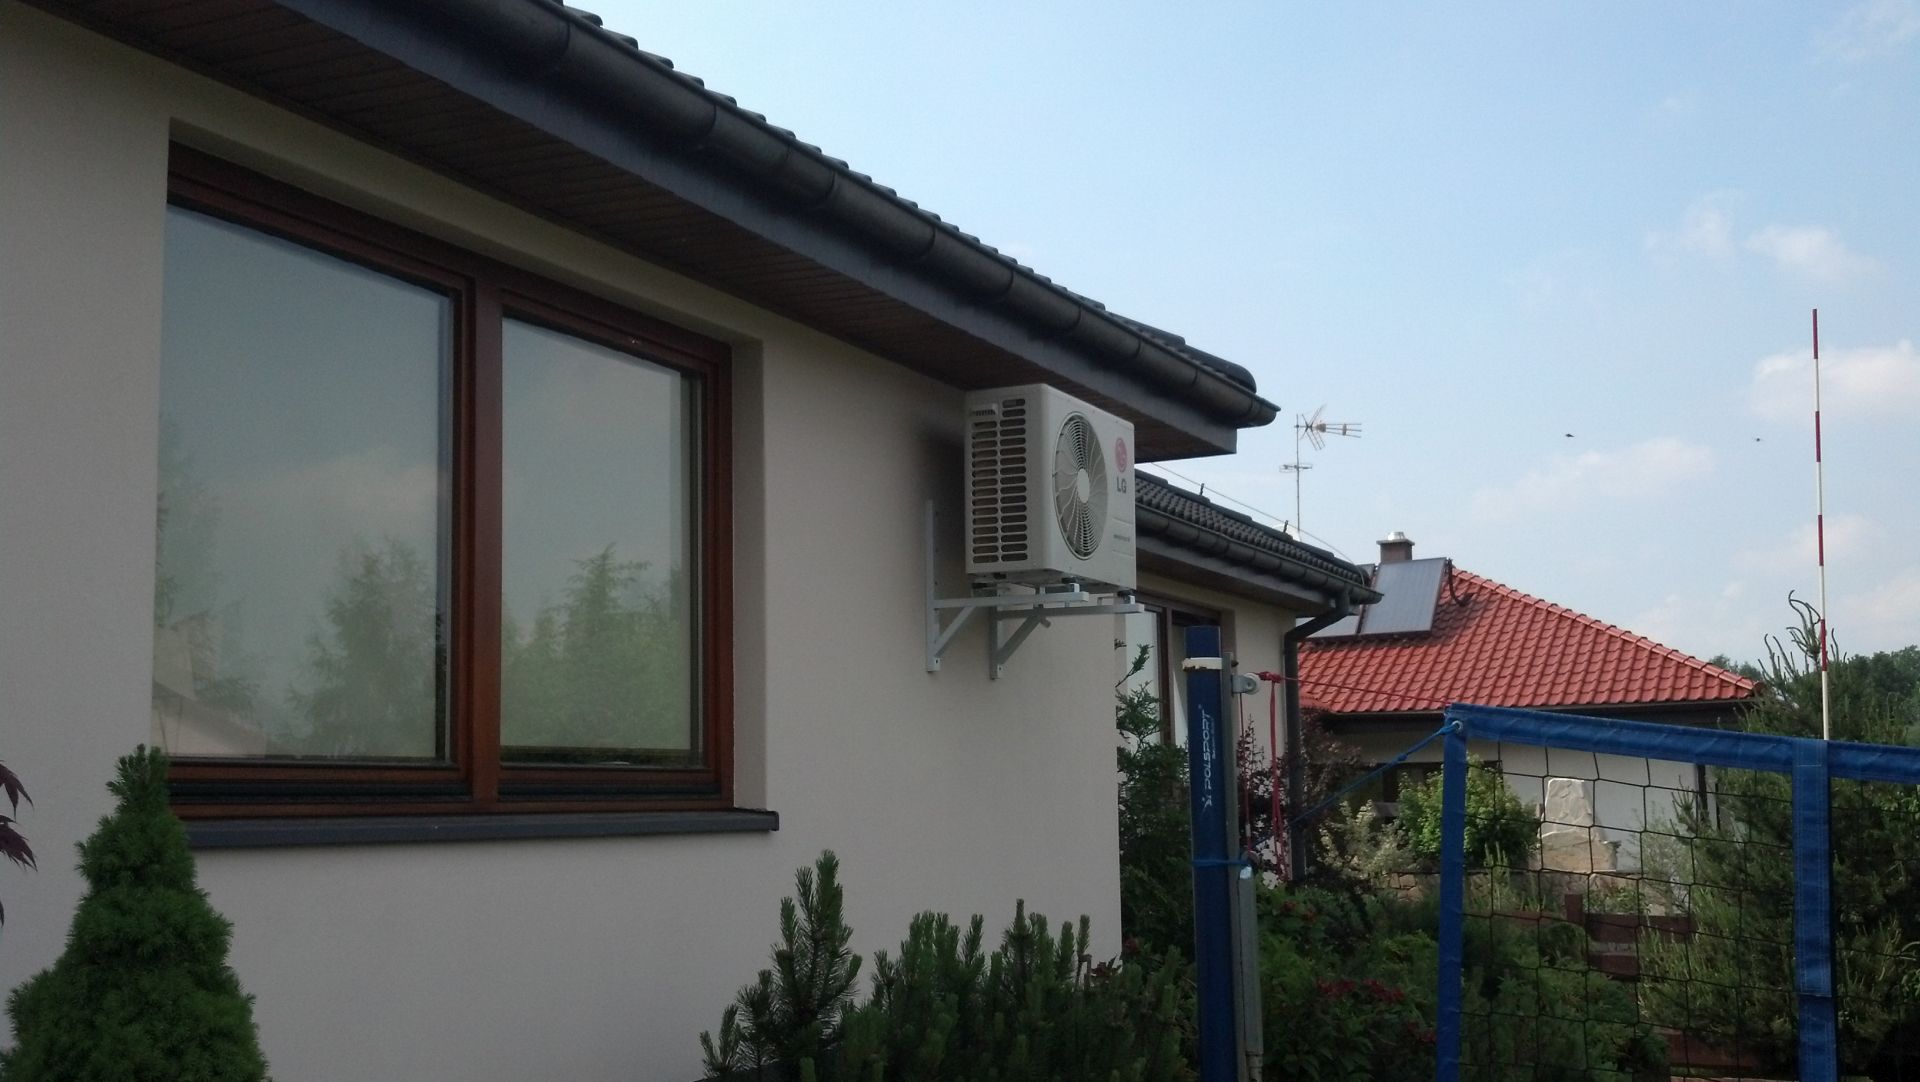 klimatyzator typu split - dom jednorodzinny w Mikołowie